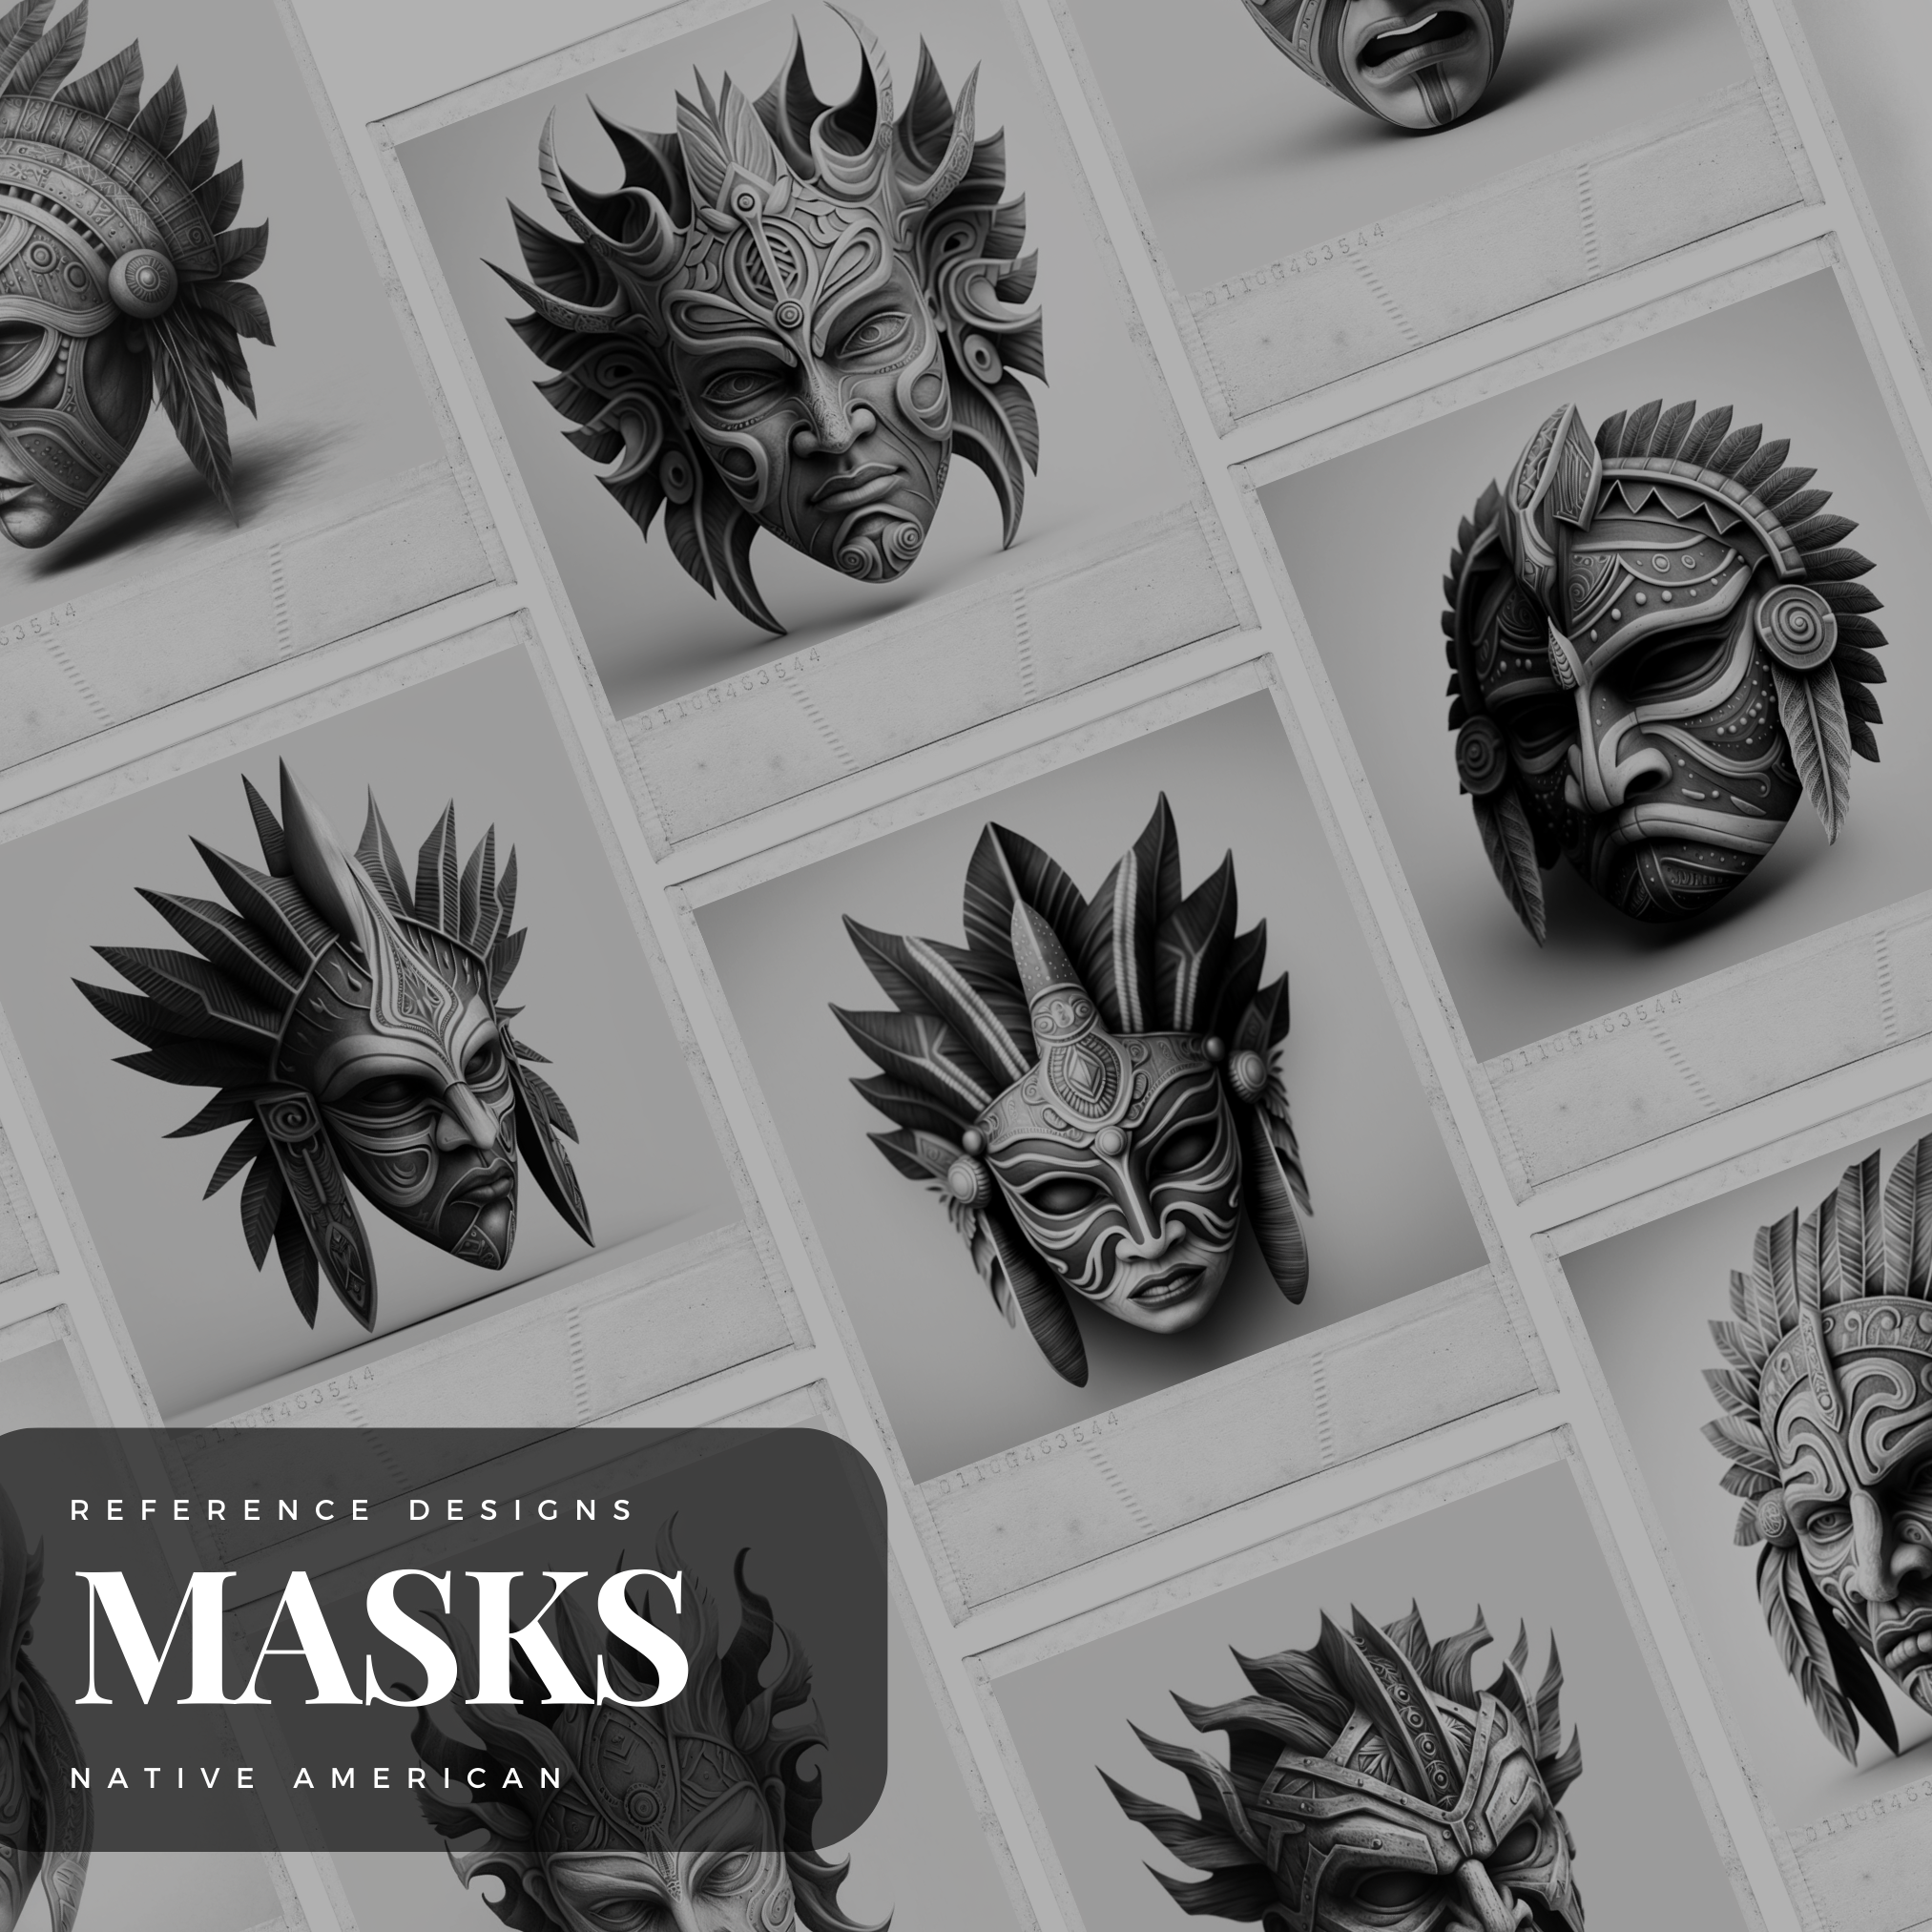 Native American Shaman Masks Digital Reference Design Collection: 50 Procreate & Sketchbook Images